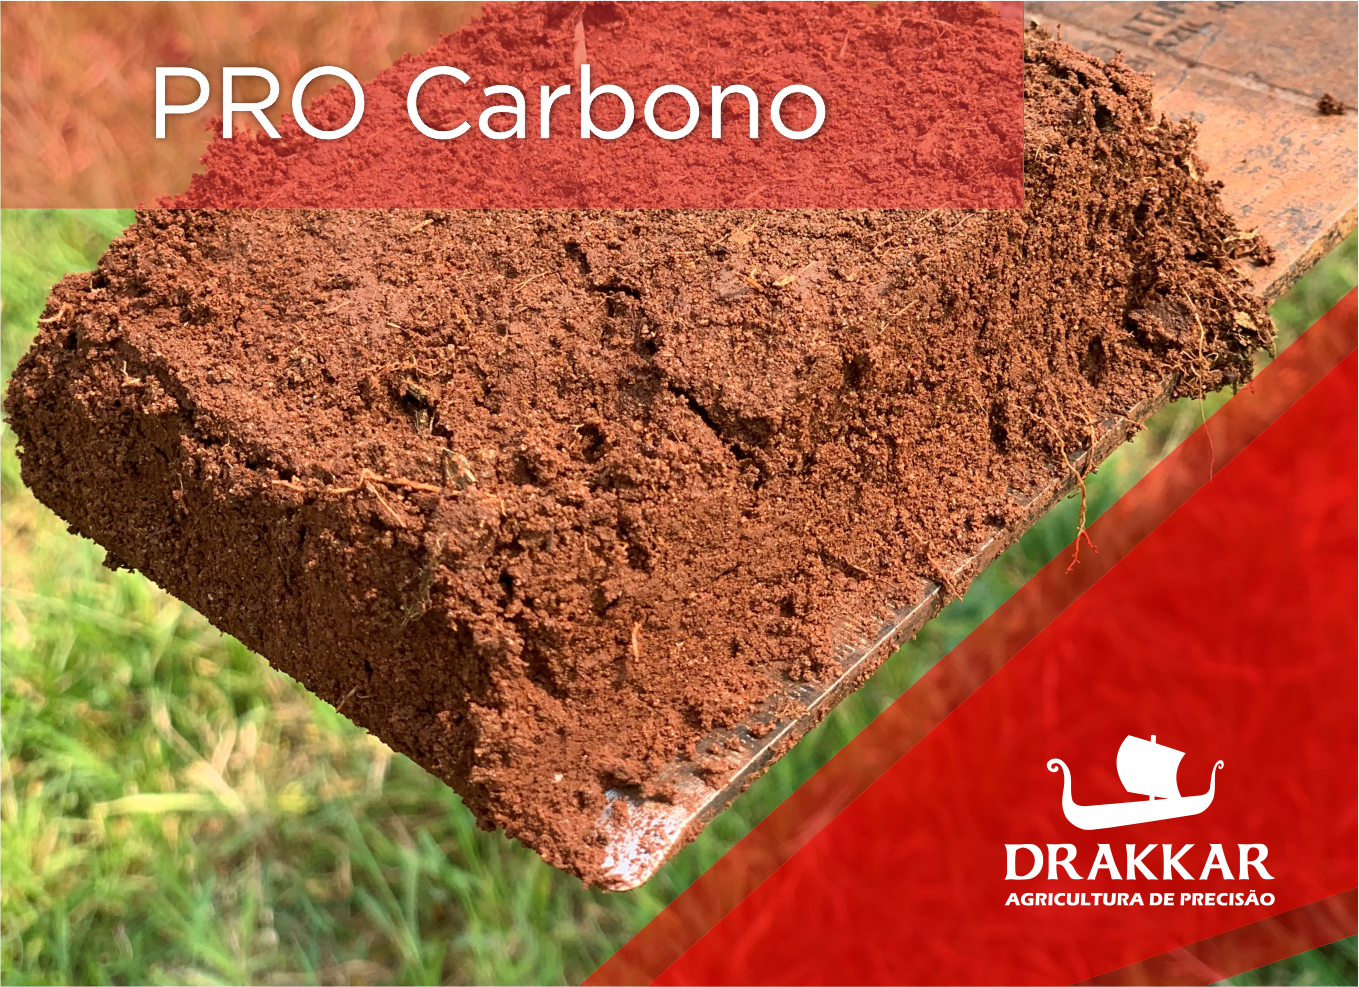 Drakkar integra PRO Carbono em parceria com a Bayer